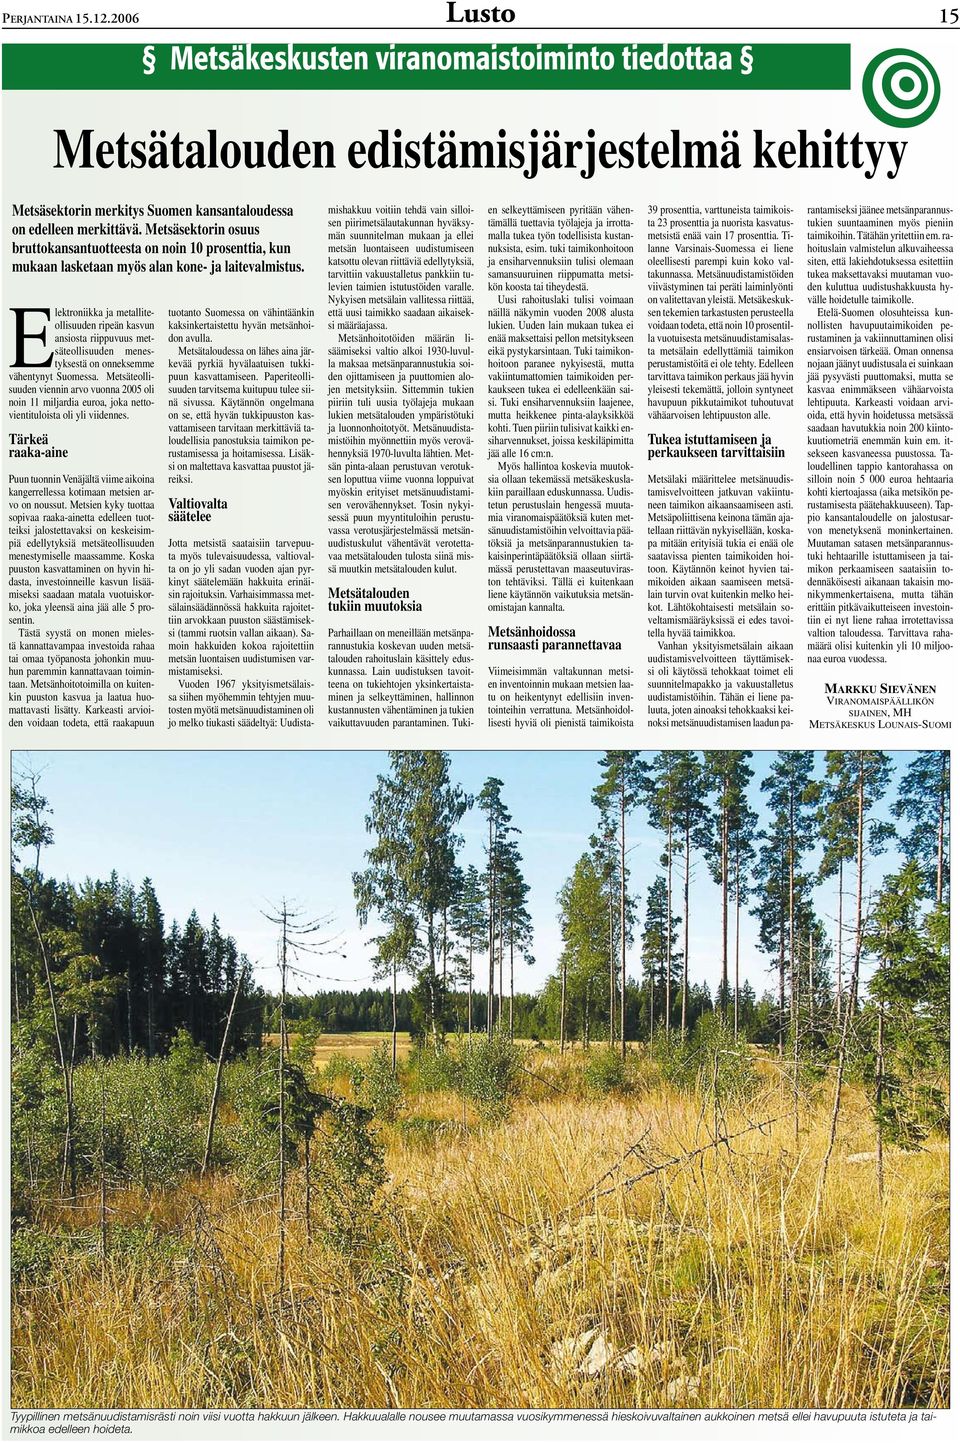 Elektroniikka ja metalliteollisuuden ripeän kasvun ansiosta riippuvuus metsäteollisuuden menestyksestä on onneksemme vähentynyt Suomessa.